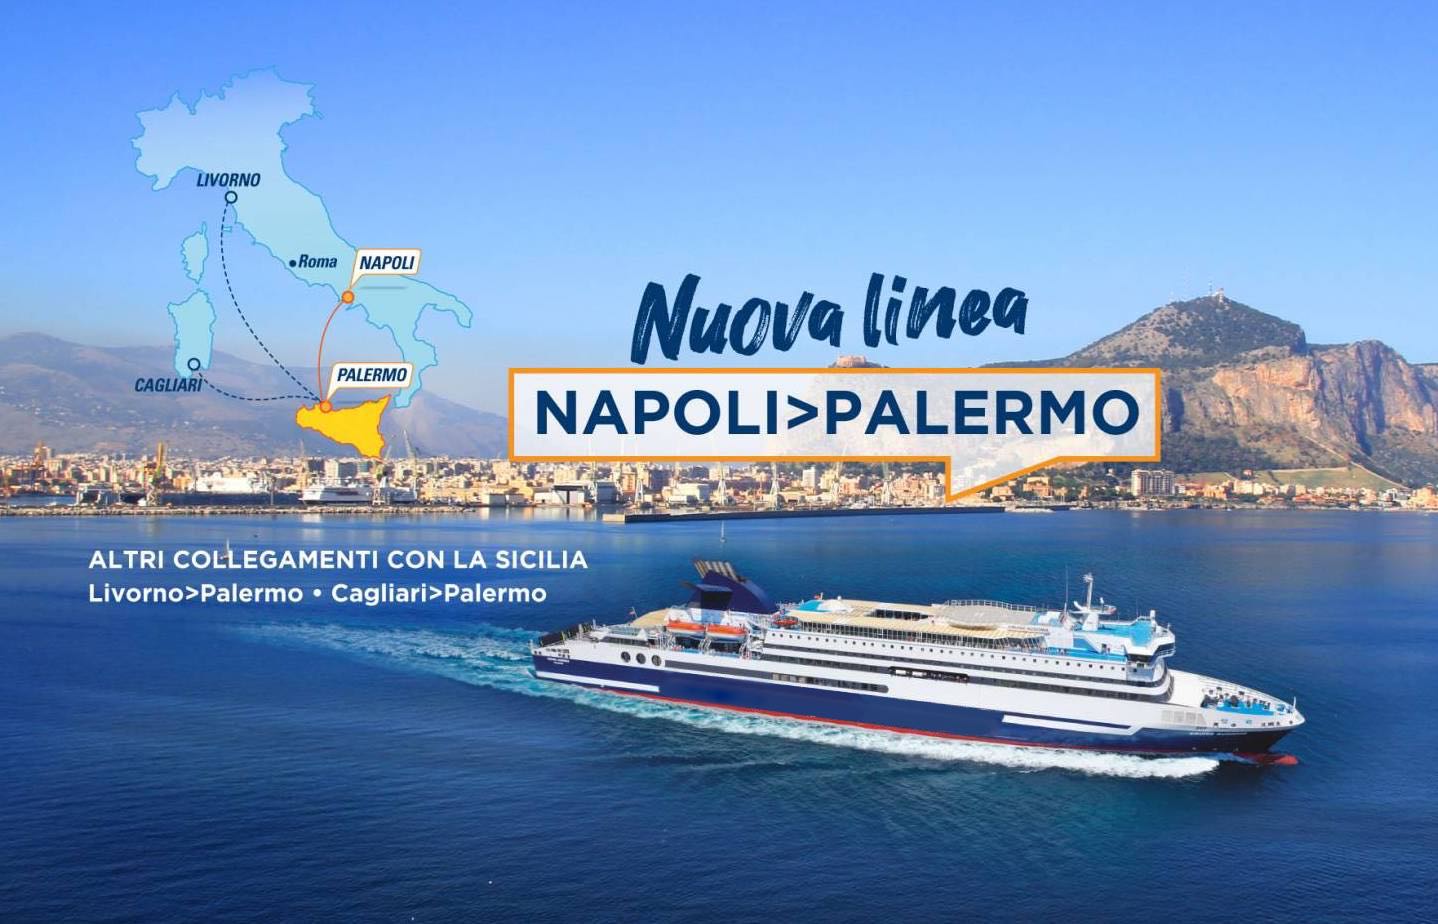 New Line Naples - Palermo